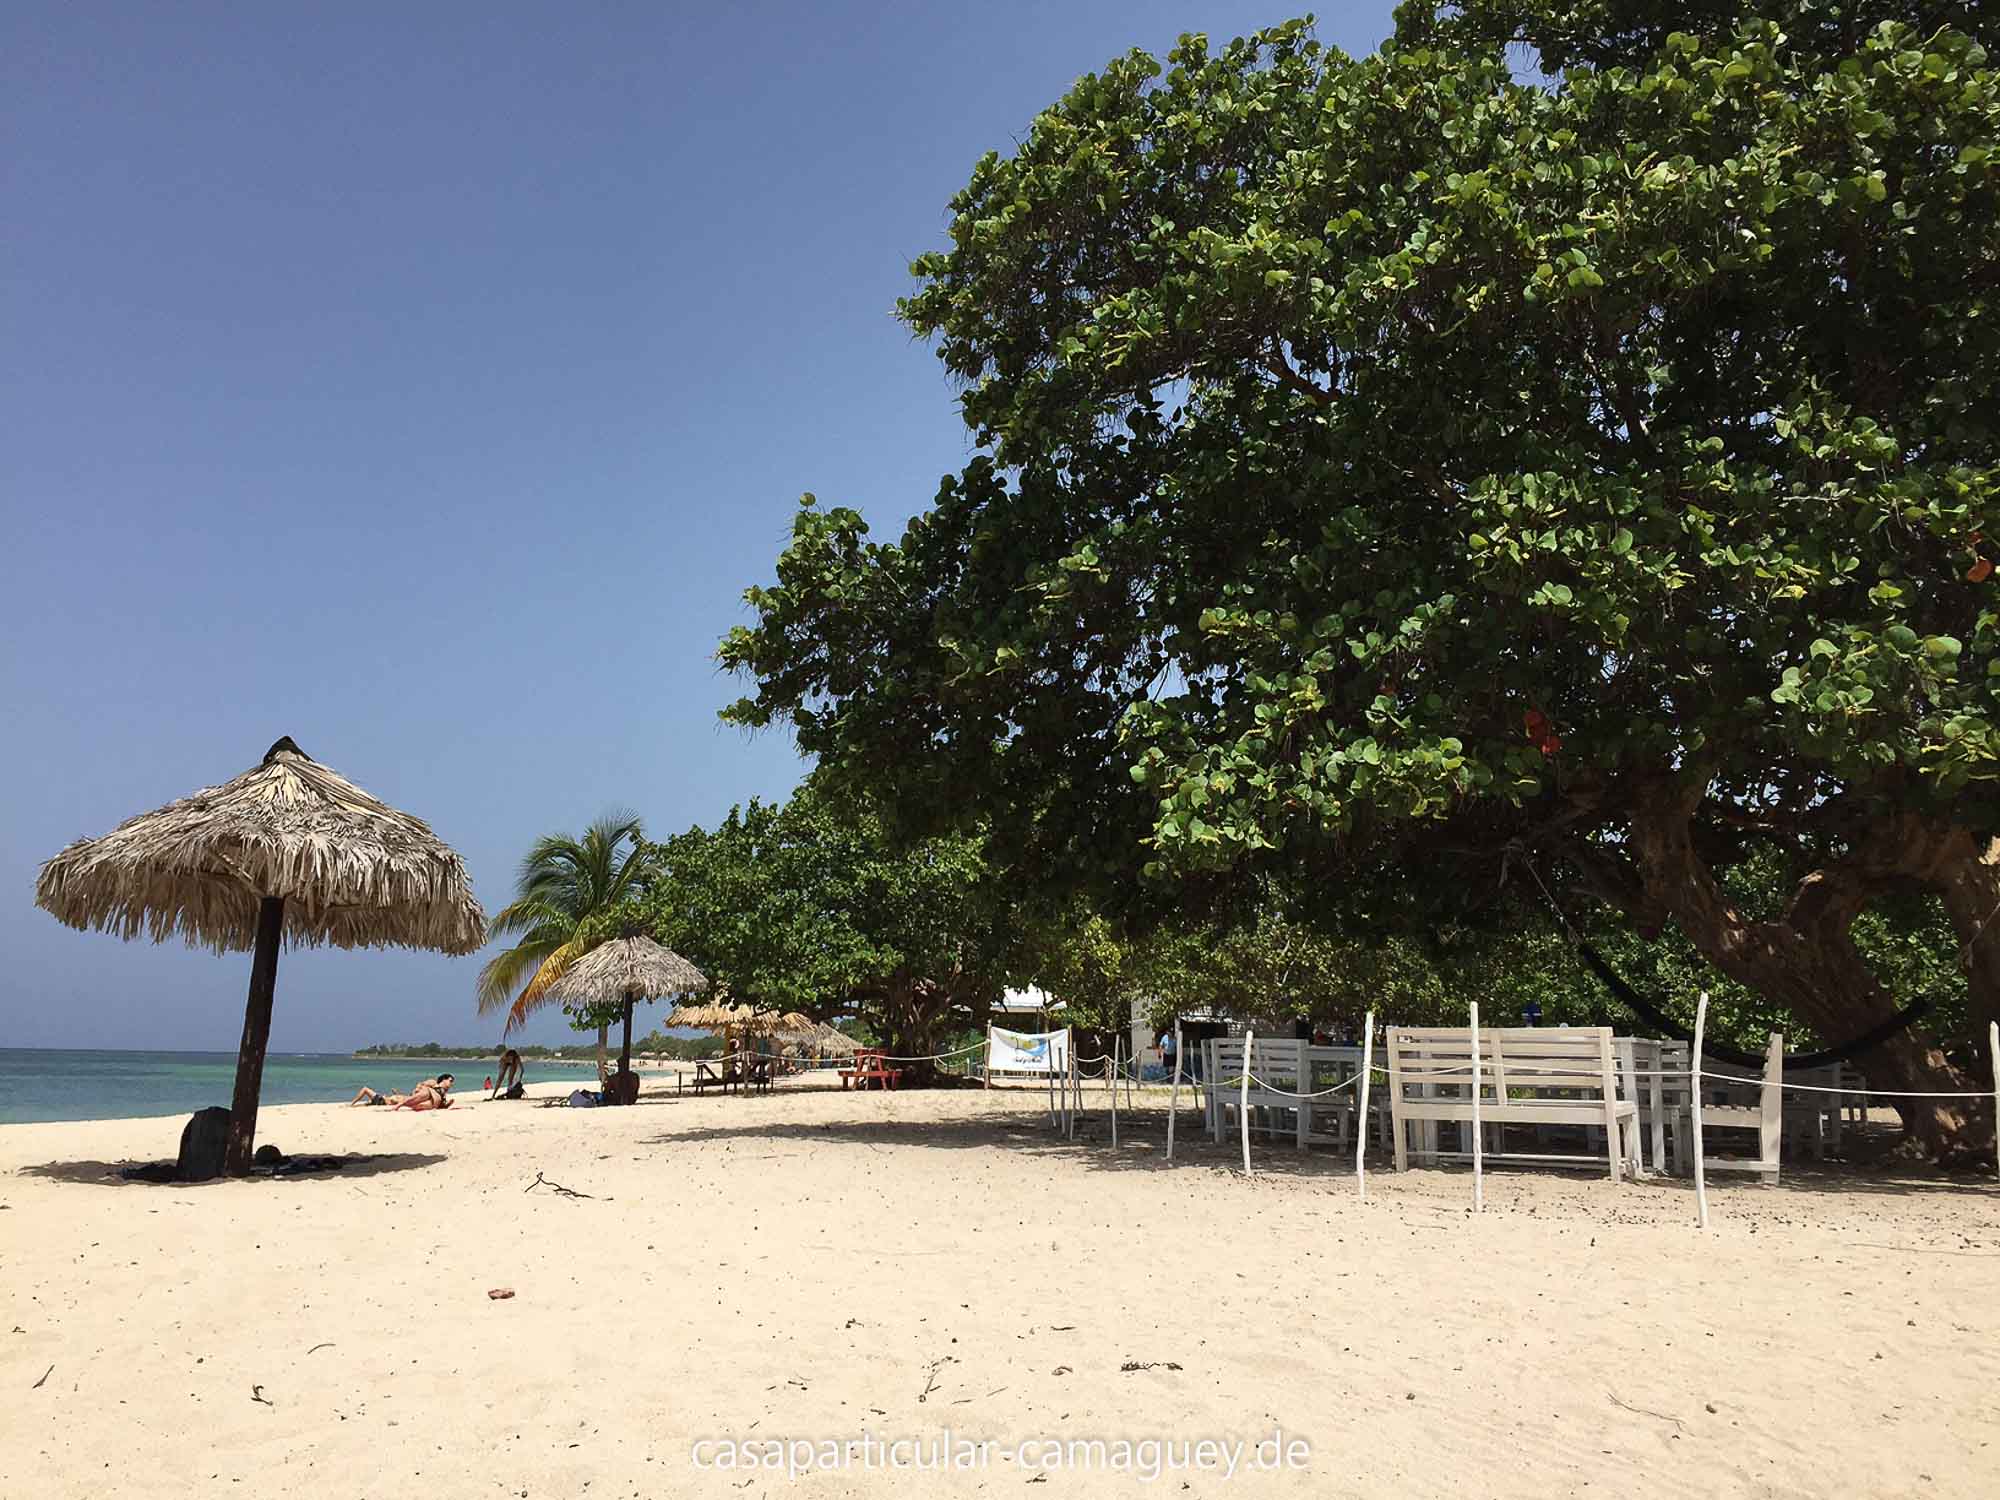 Gehört zu schönsten Stränden Kubas: Playa Ancon bei Trinidad